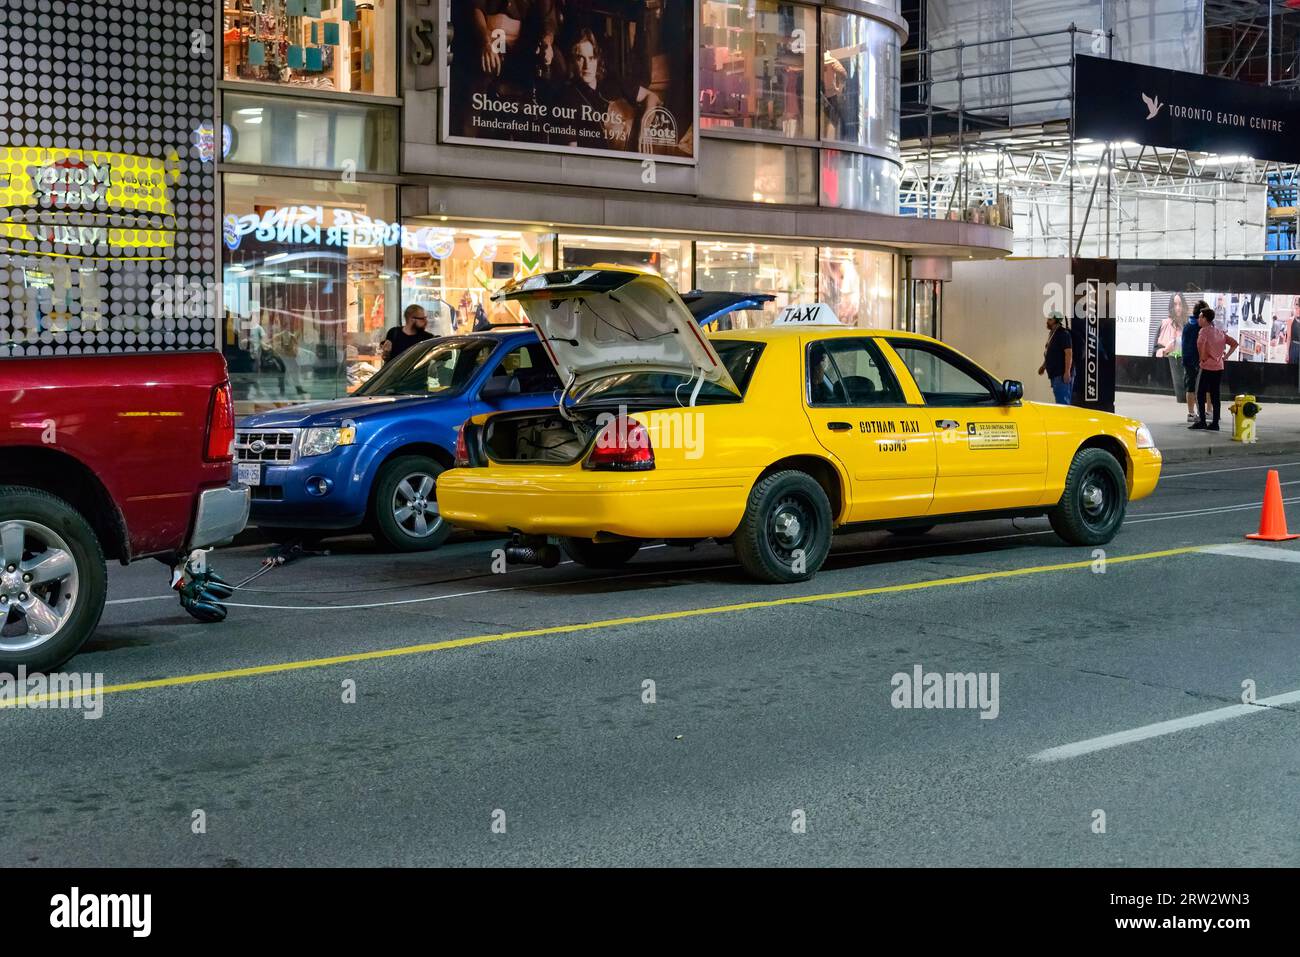 Ein gelbes Taxi, das Gothan Taxi vor der Tür liest, ist in der Yonge Street geparkt. Stockfoto